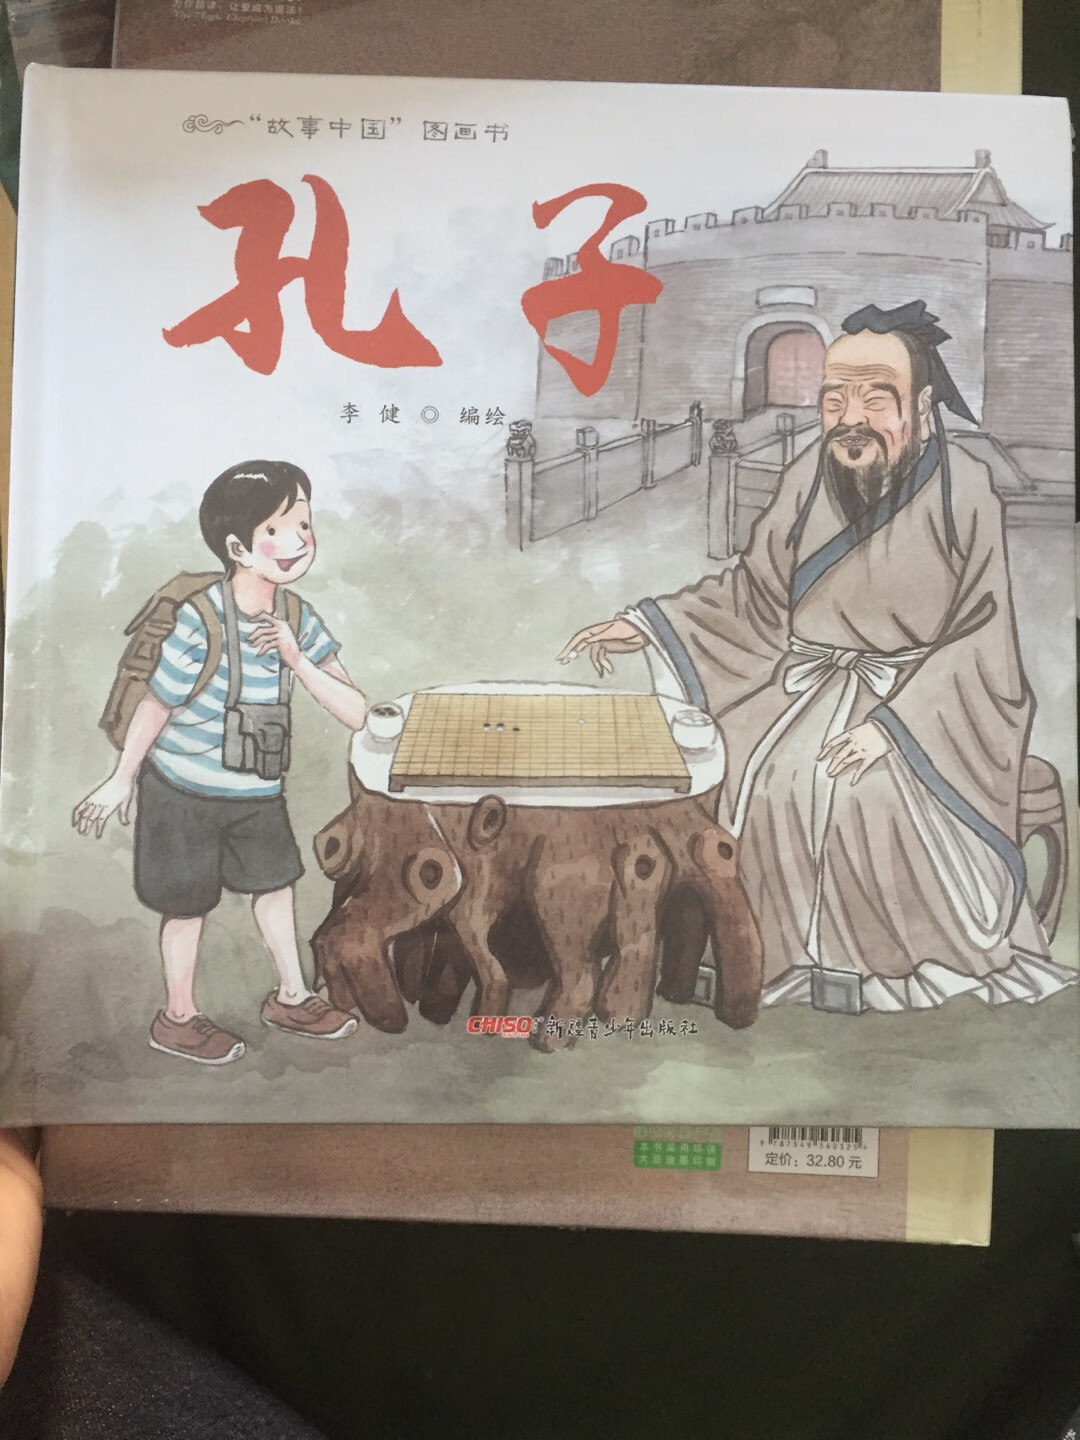 中国自己的文化知识，让孩子了解一下。买书折扣真心不错，家里的书基本都是买的。